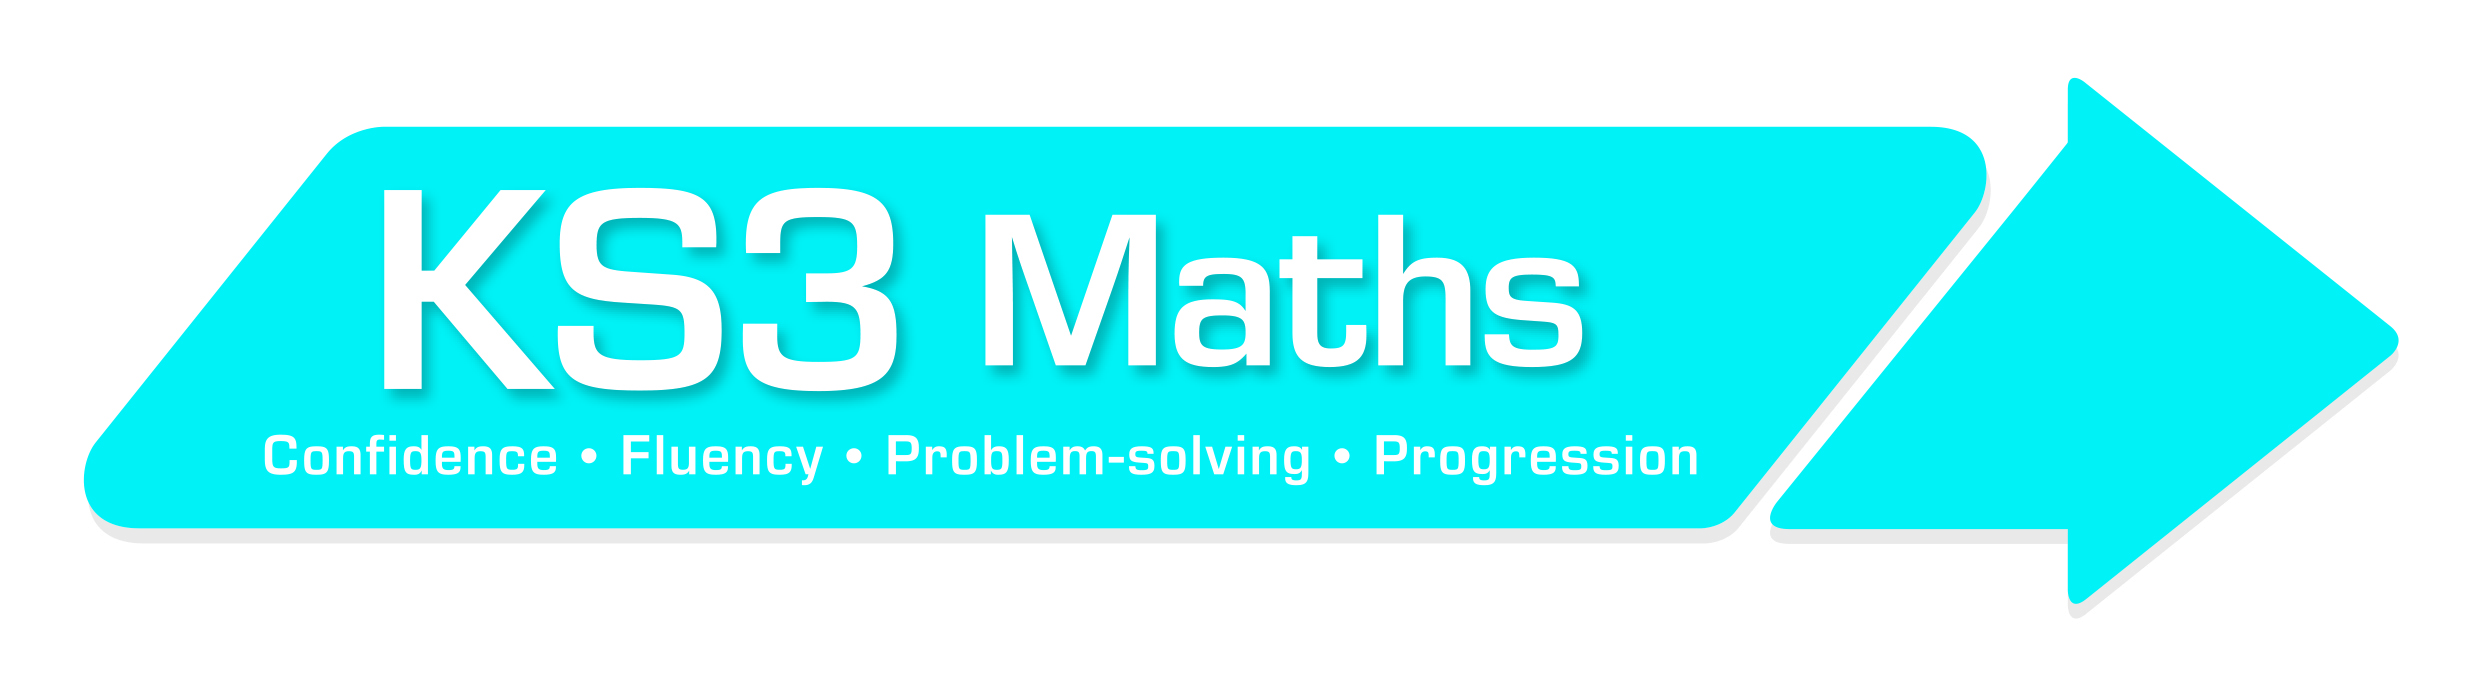 KS3 Maths Logo